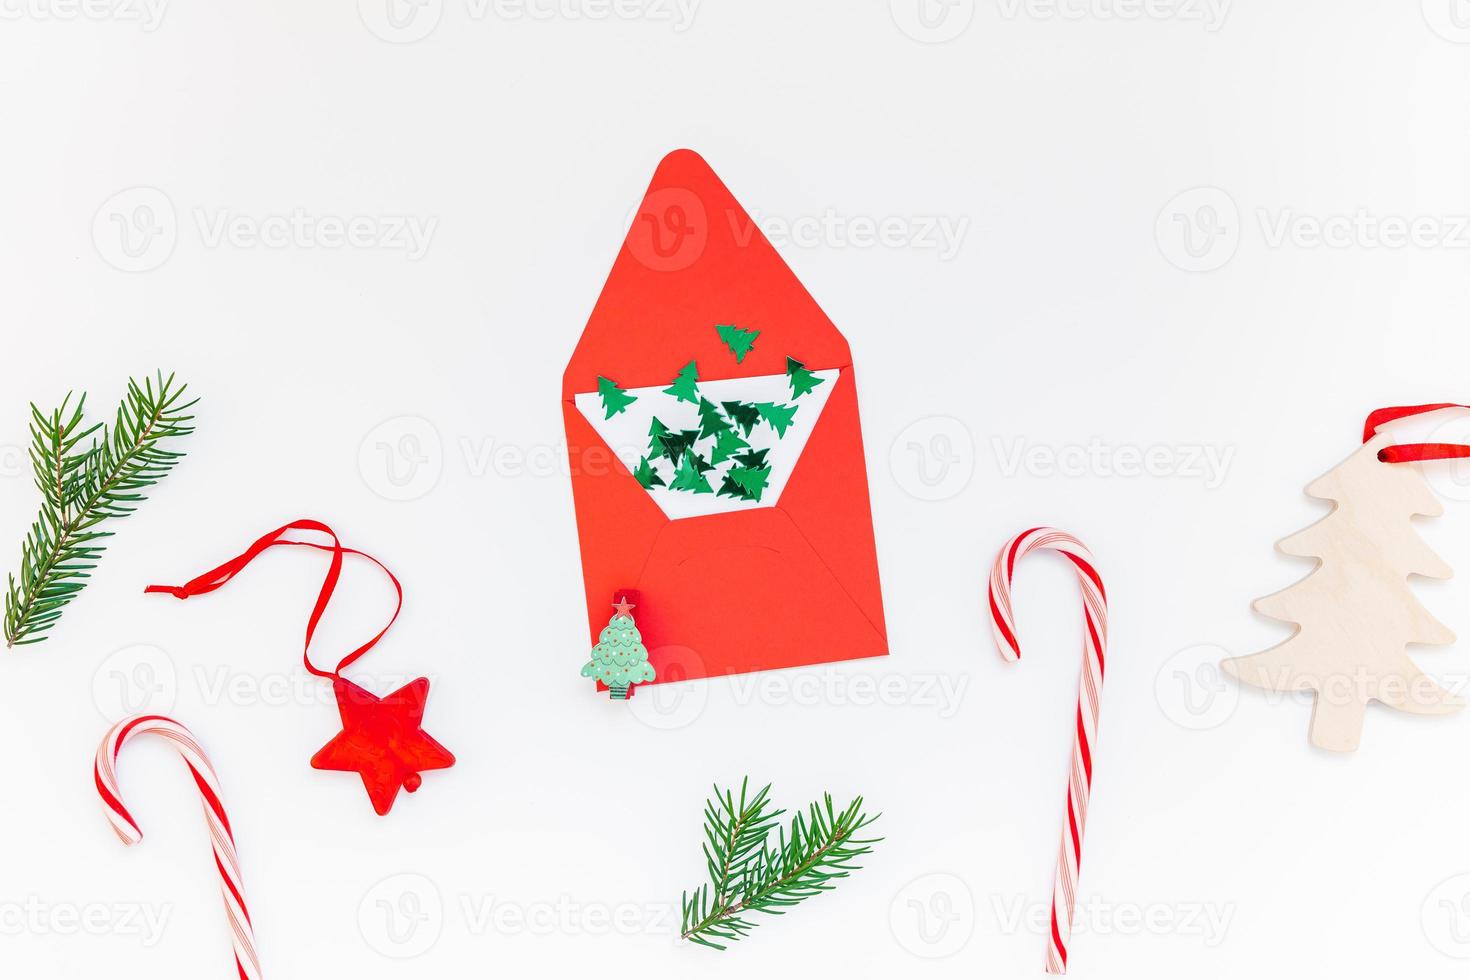 Kerstmis decoratie patroon Aan wit achtergrond foto